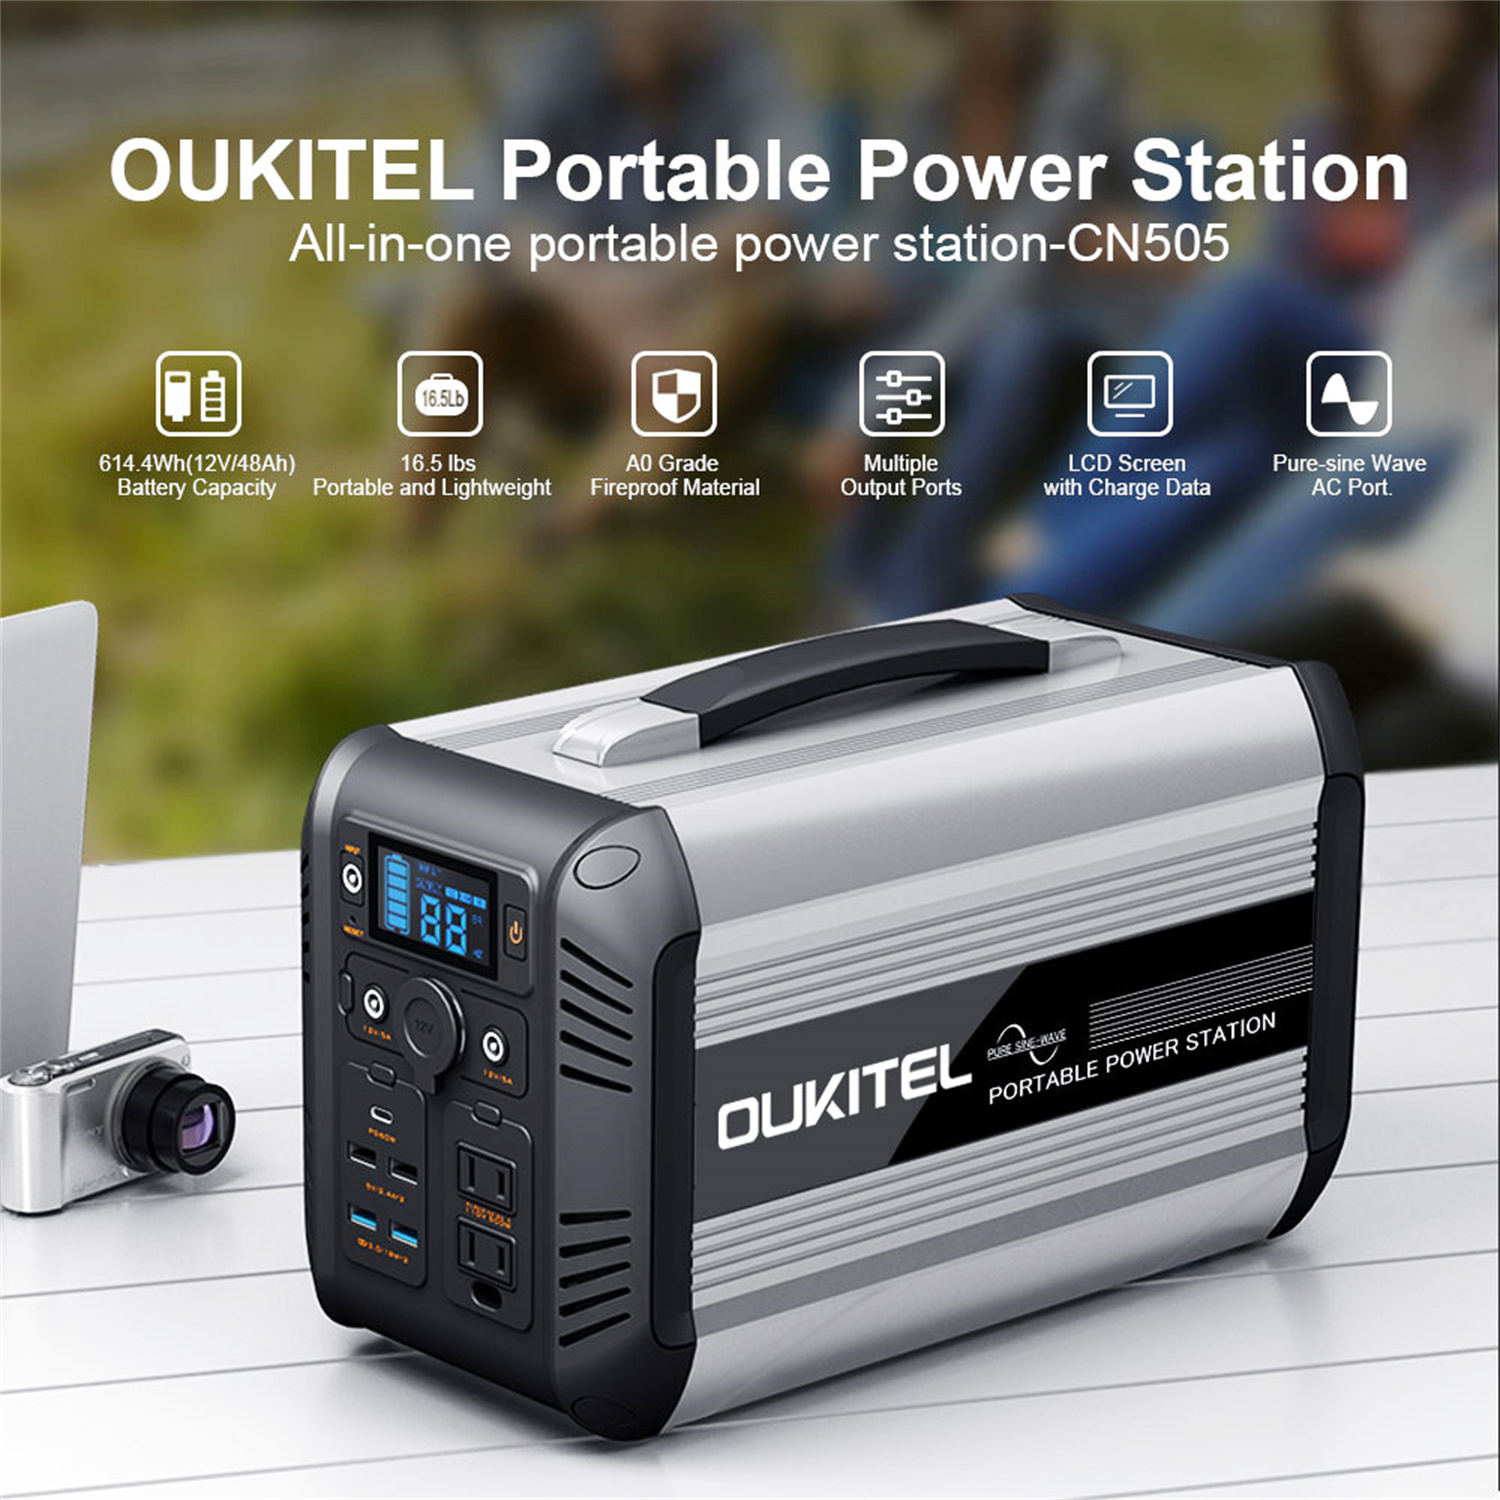 OUKITEL CN505 Centrale électrique portable 614Wh/500W avec onde sinusoïdale pure et charge solaire rapide